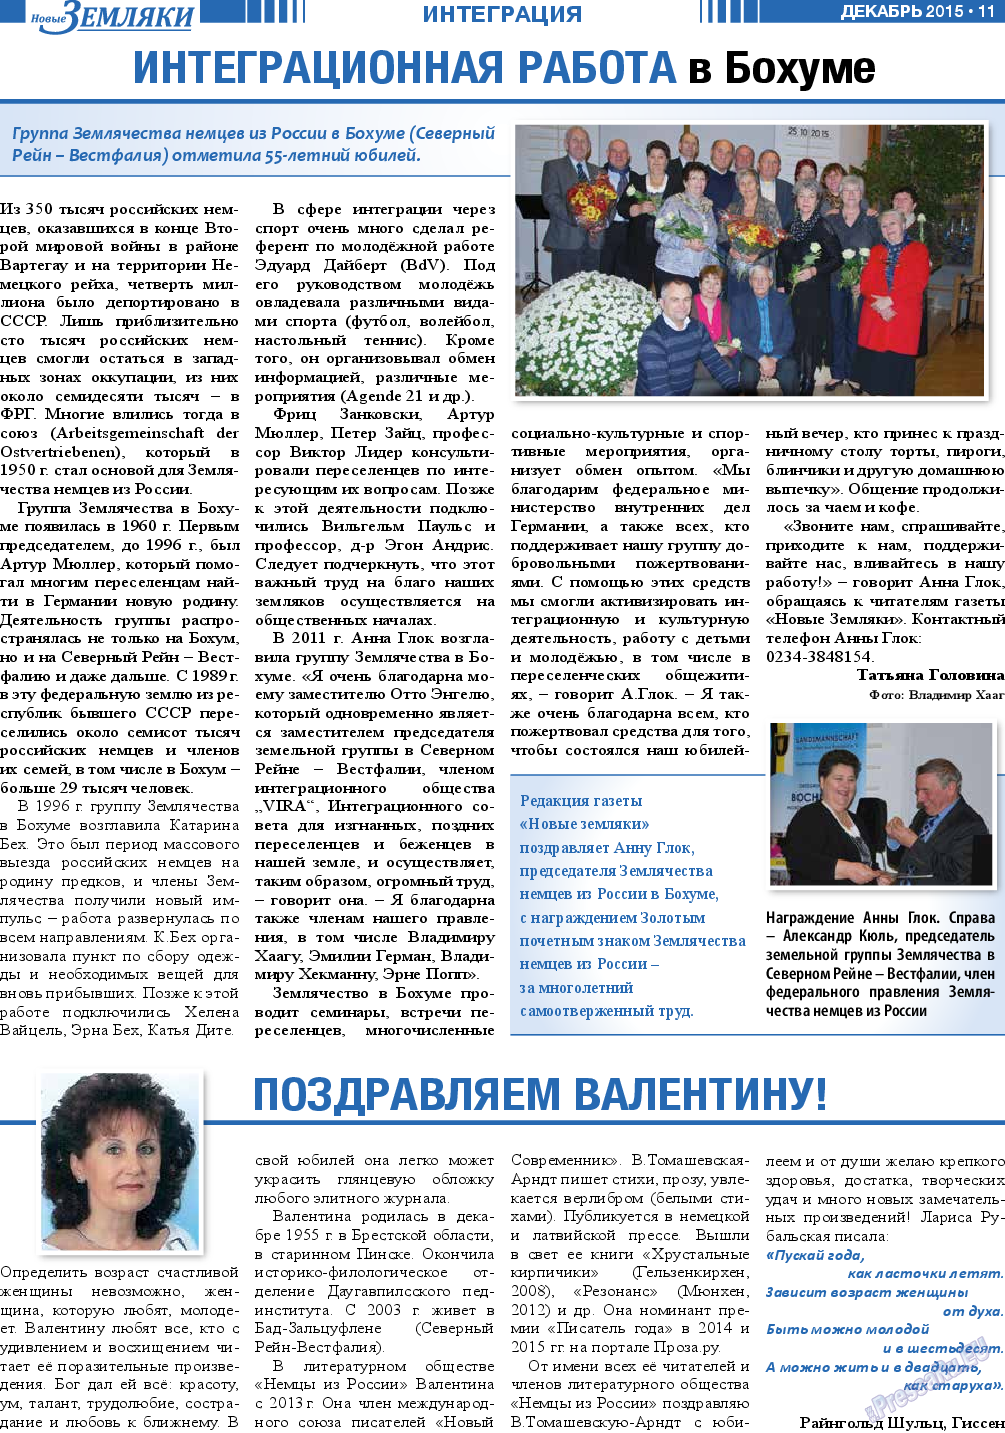 Новые Земляки, газета. 2015 №12 стр.11